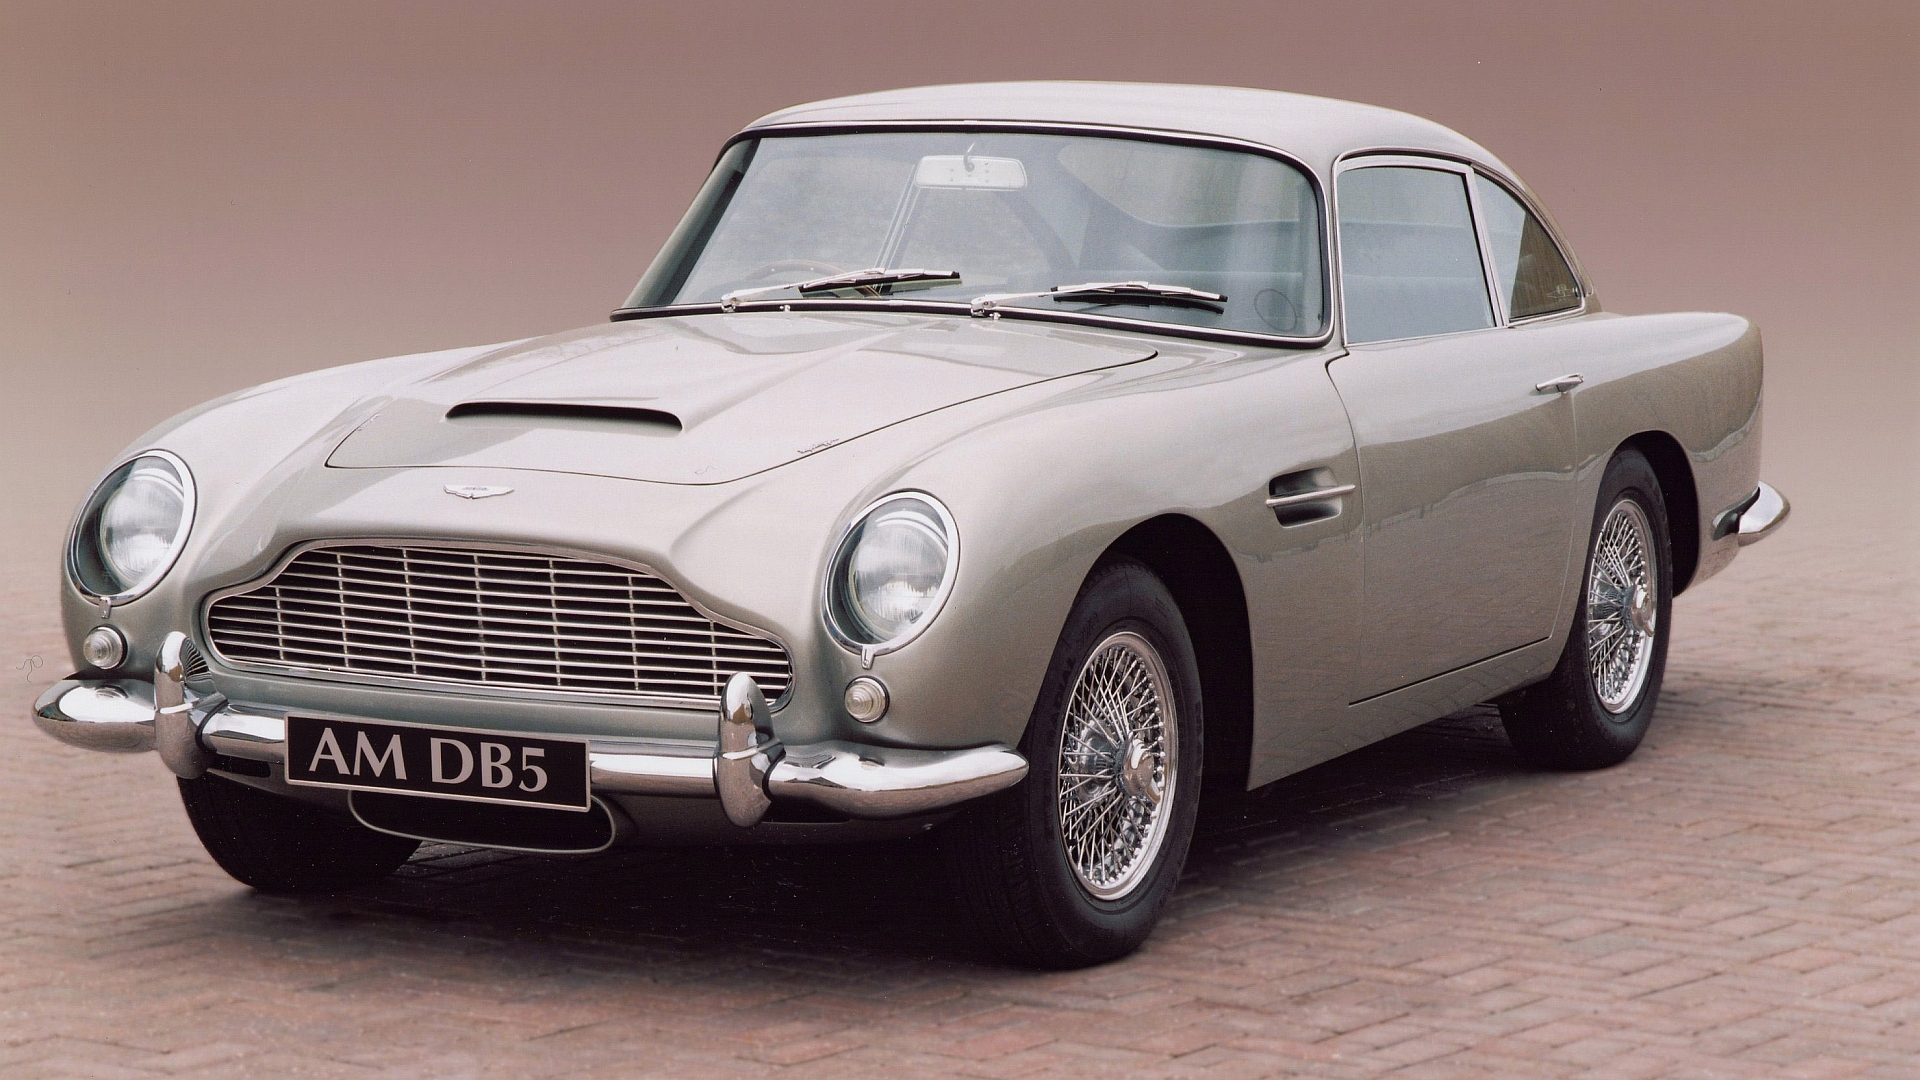 Descarga gratuita de fondo de pantalla para móvil de Aston Martin Db5, Aston Martin, Vehículos.